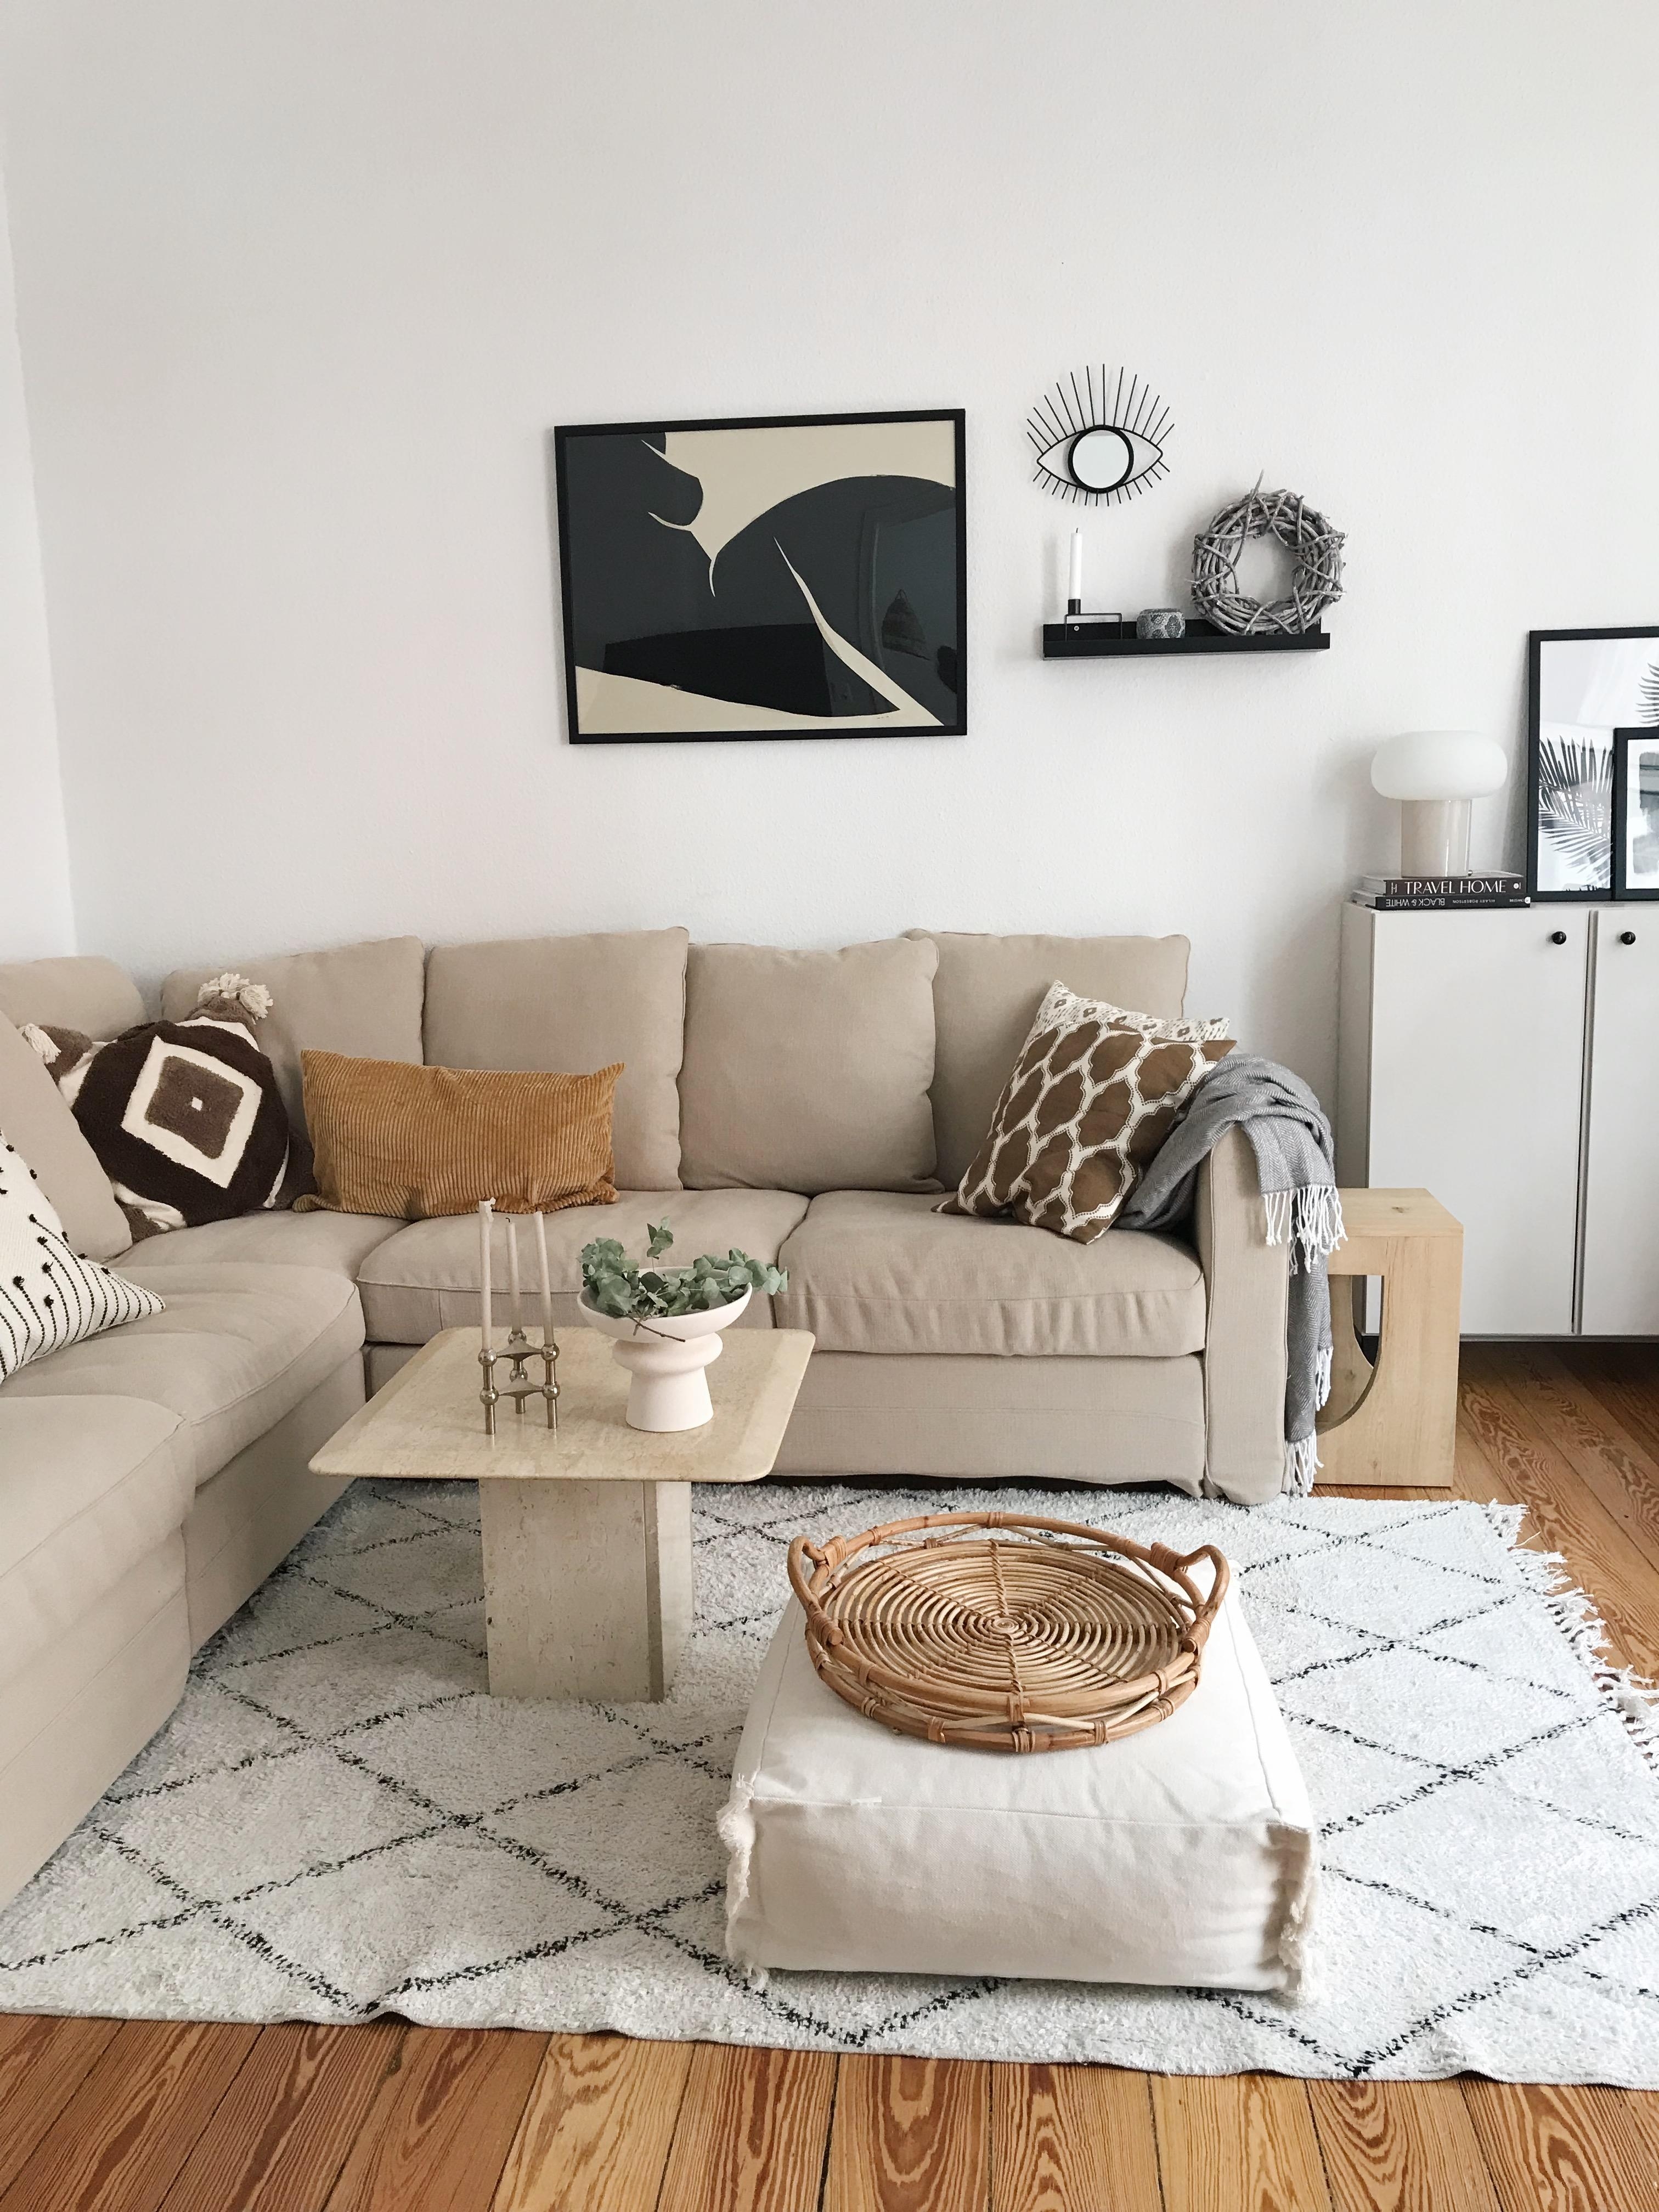 Mit erdigen Tönen einen neuen Look verliehen 🤎
#altbau#wohnzimmer#livingroom